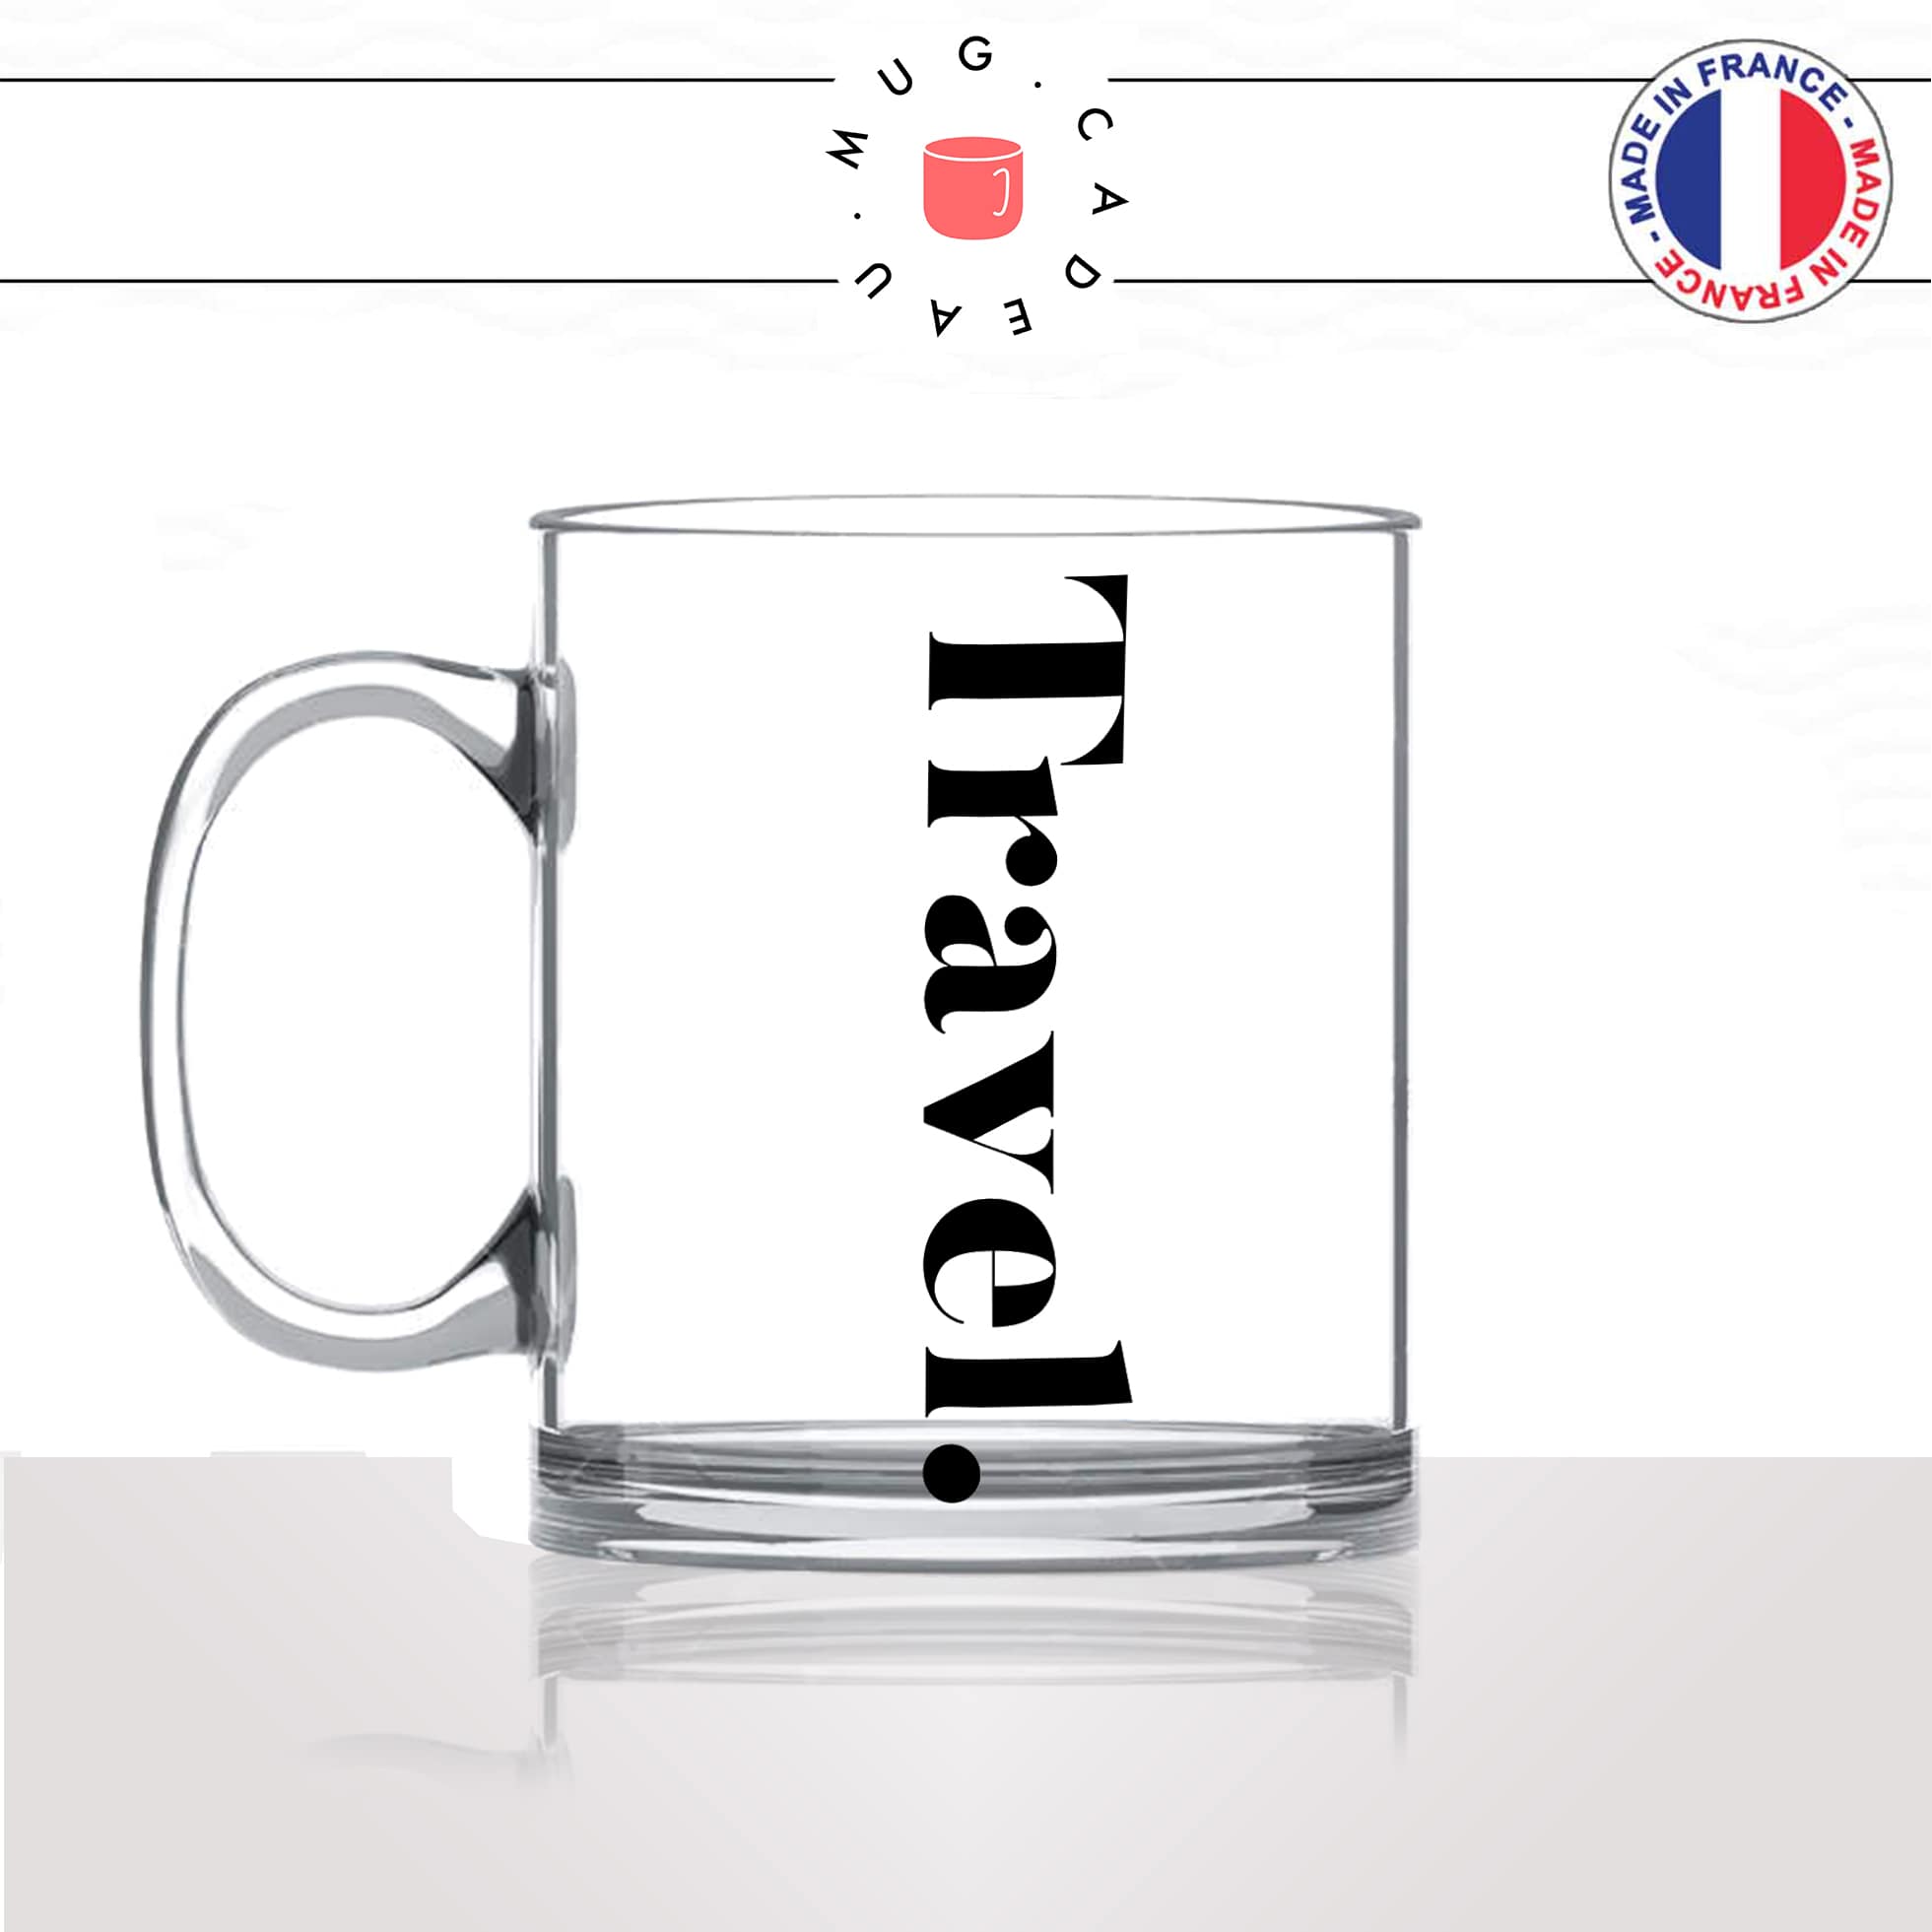 mug-tasse-en-verre-transparent-glass-travel-voyage-calligraphie-lettrine-mot-anglais-collegue-décoration-amie-idée-cadeau-original-personnalisé-café-thé-min